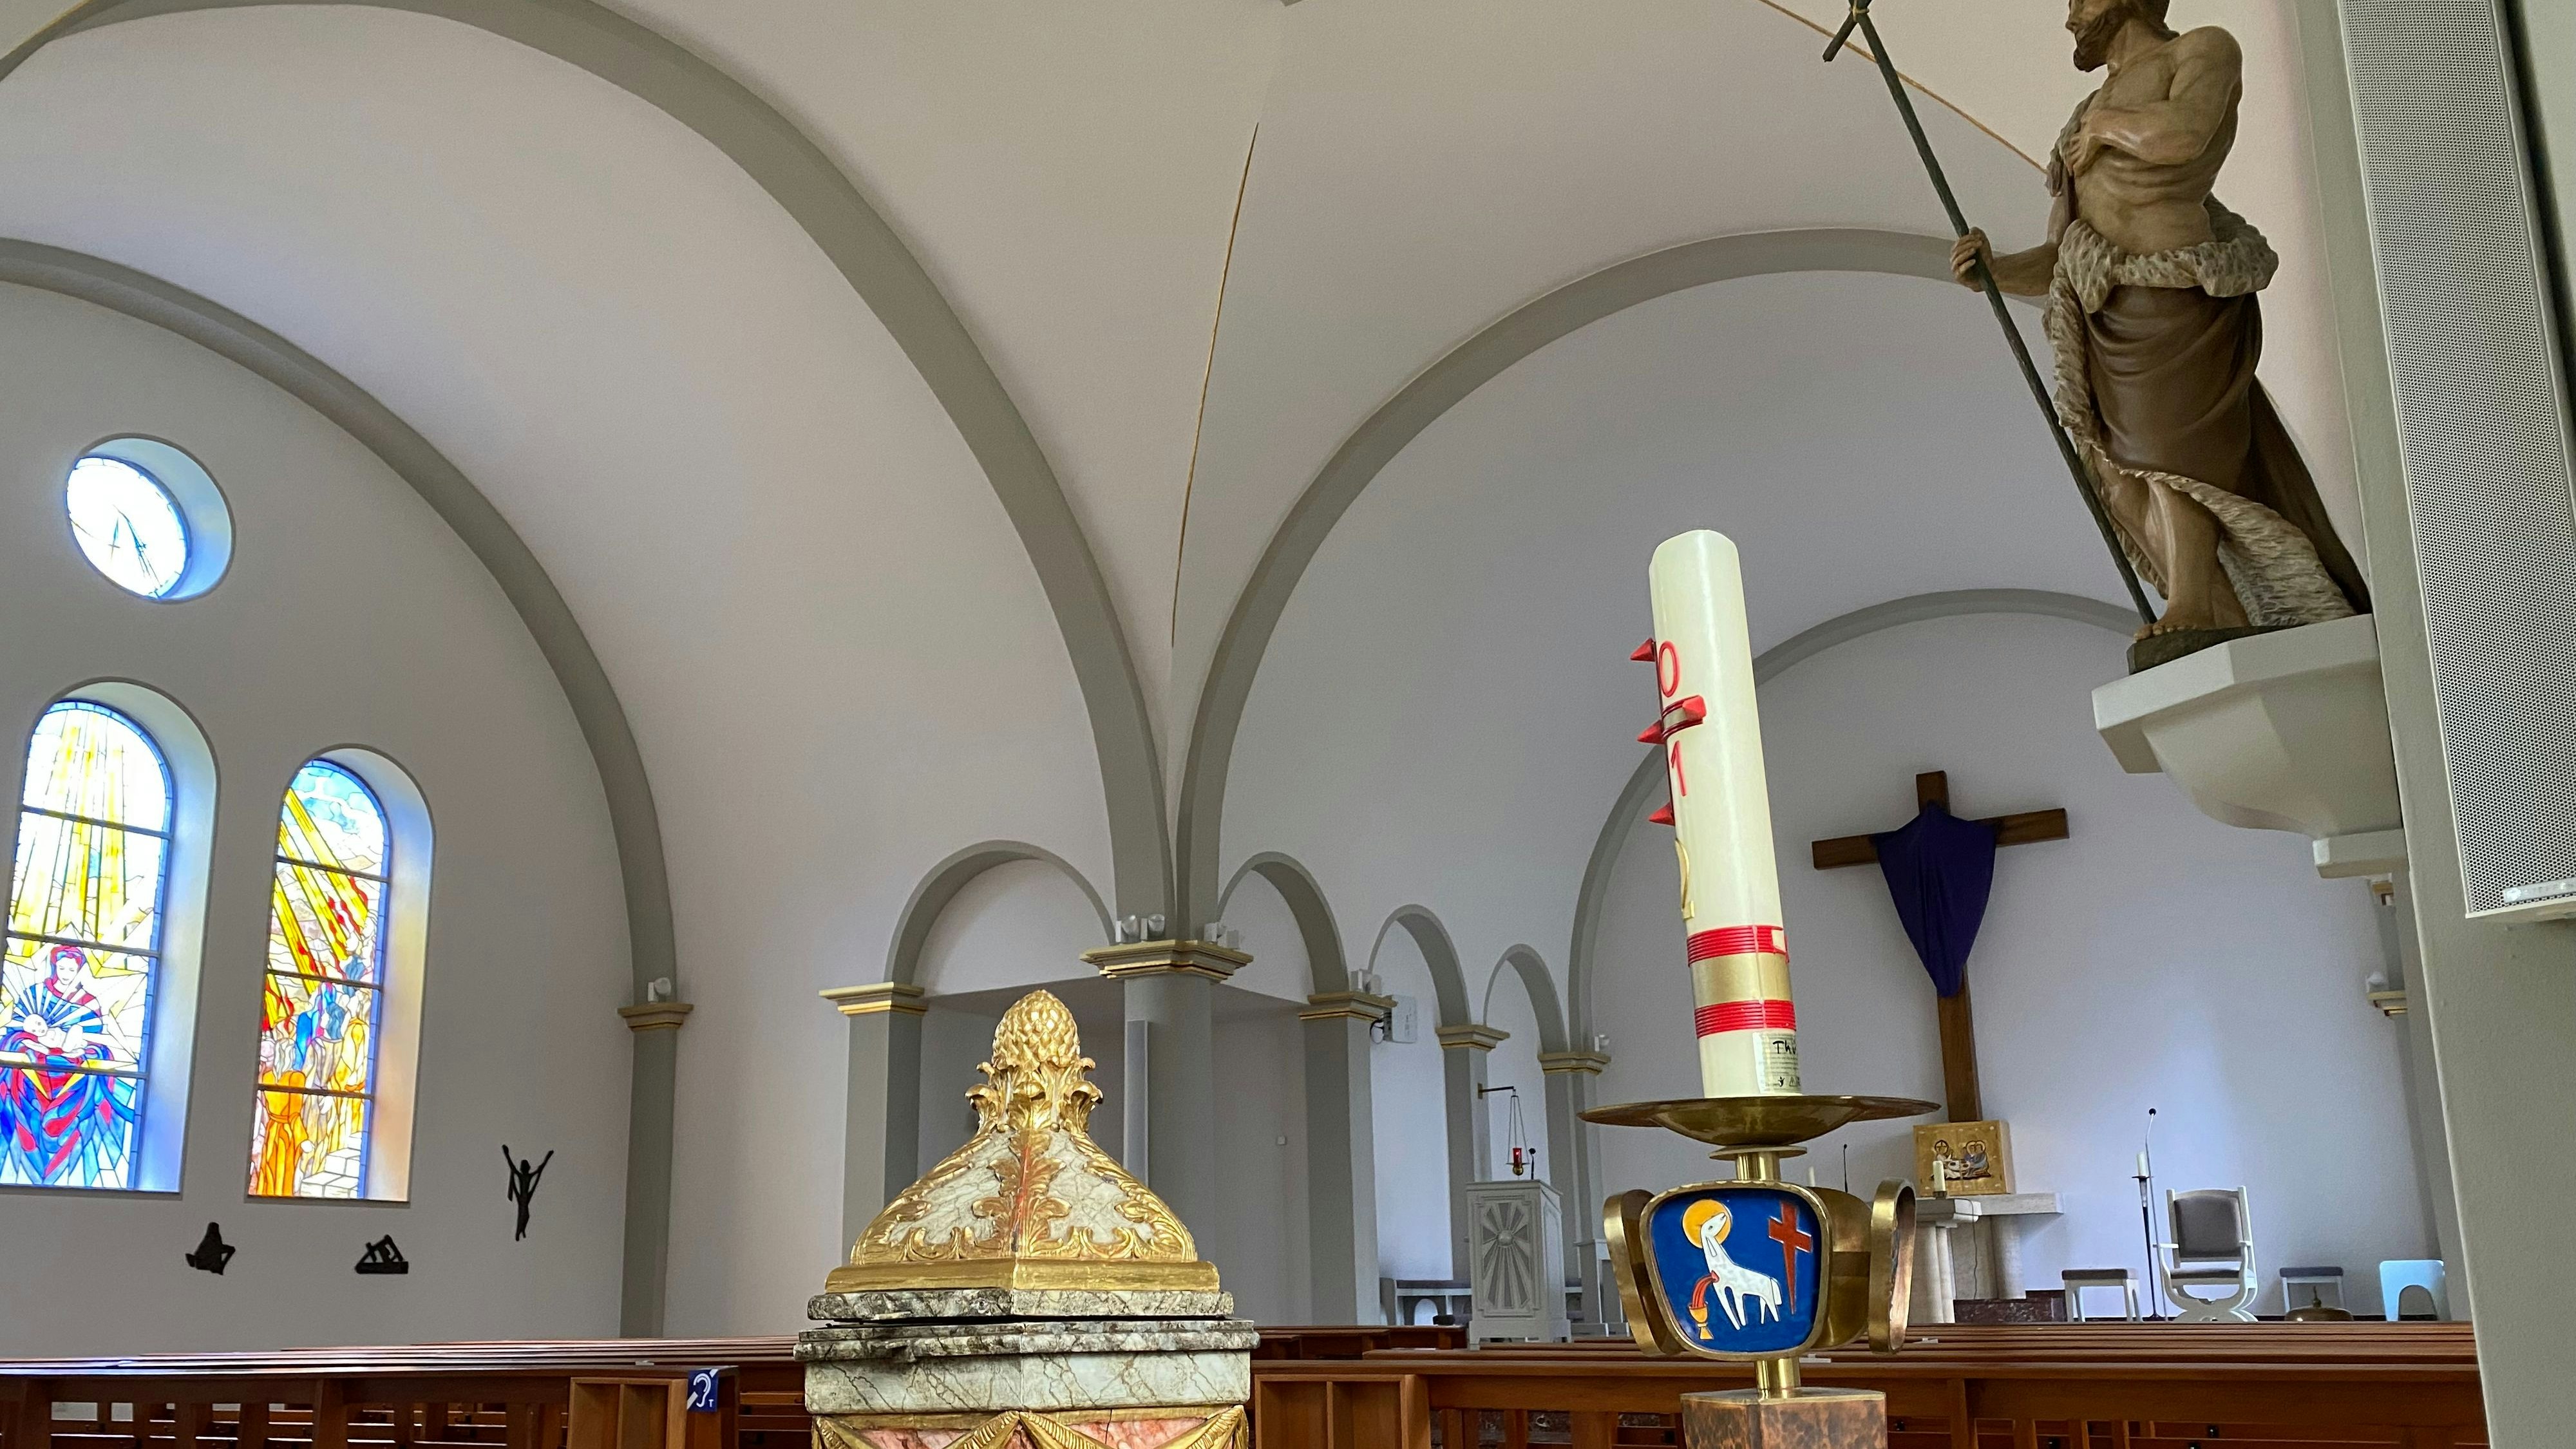 Neuer Standort: Der Namenspatron und das Taufbecken sind in der frisch sanierten Kirche in den Mittelpunkt gerückt. Foto: Wimberg